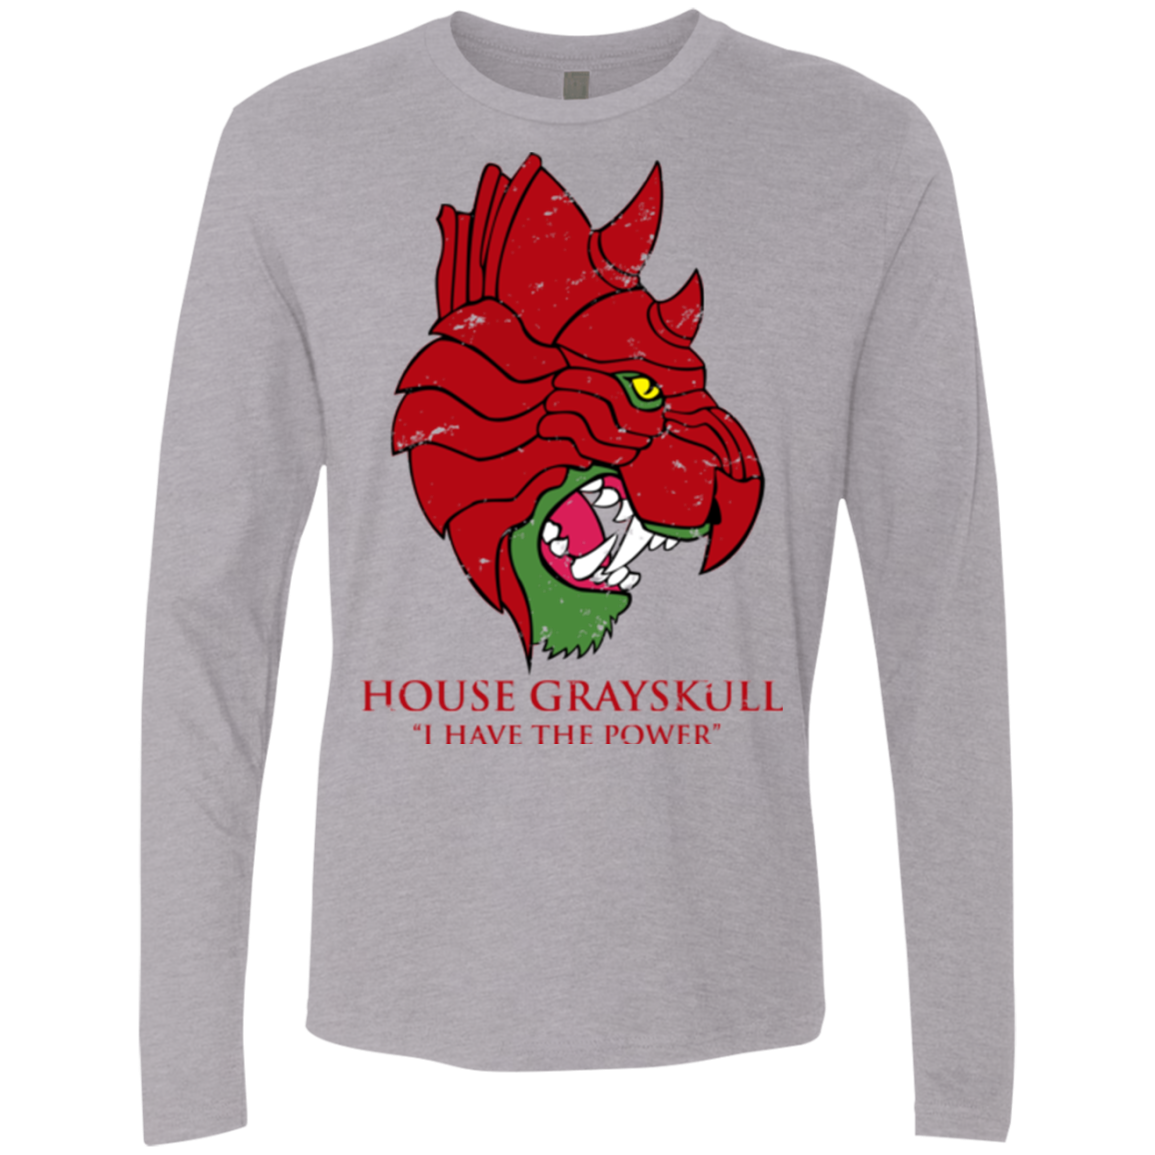 House GraySkull Men's Premium Long Sleeve